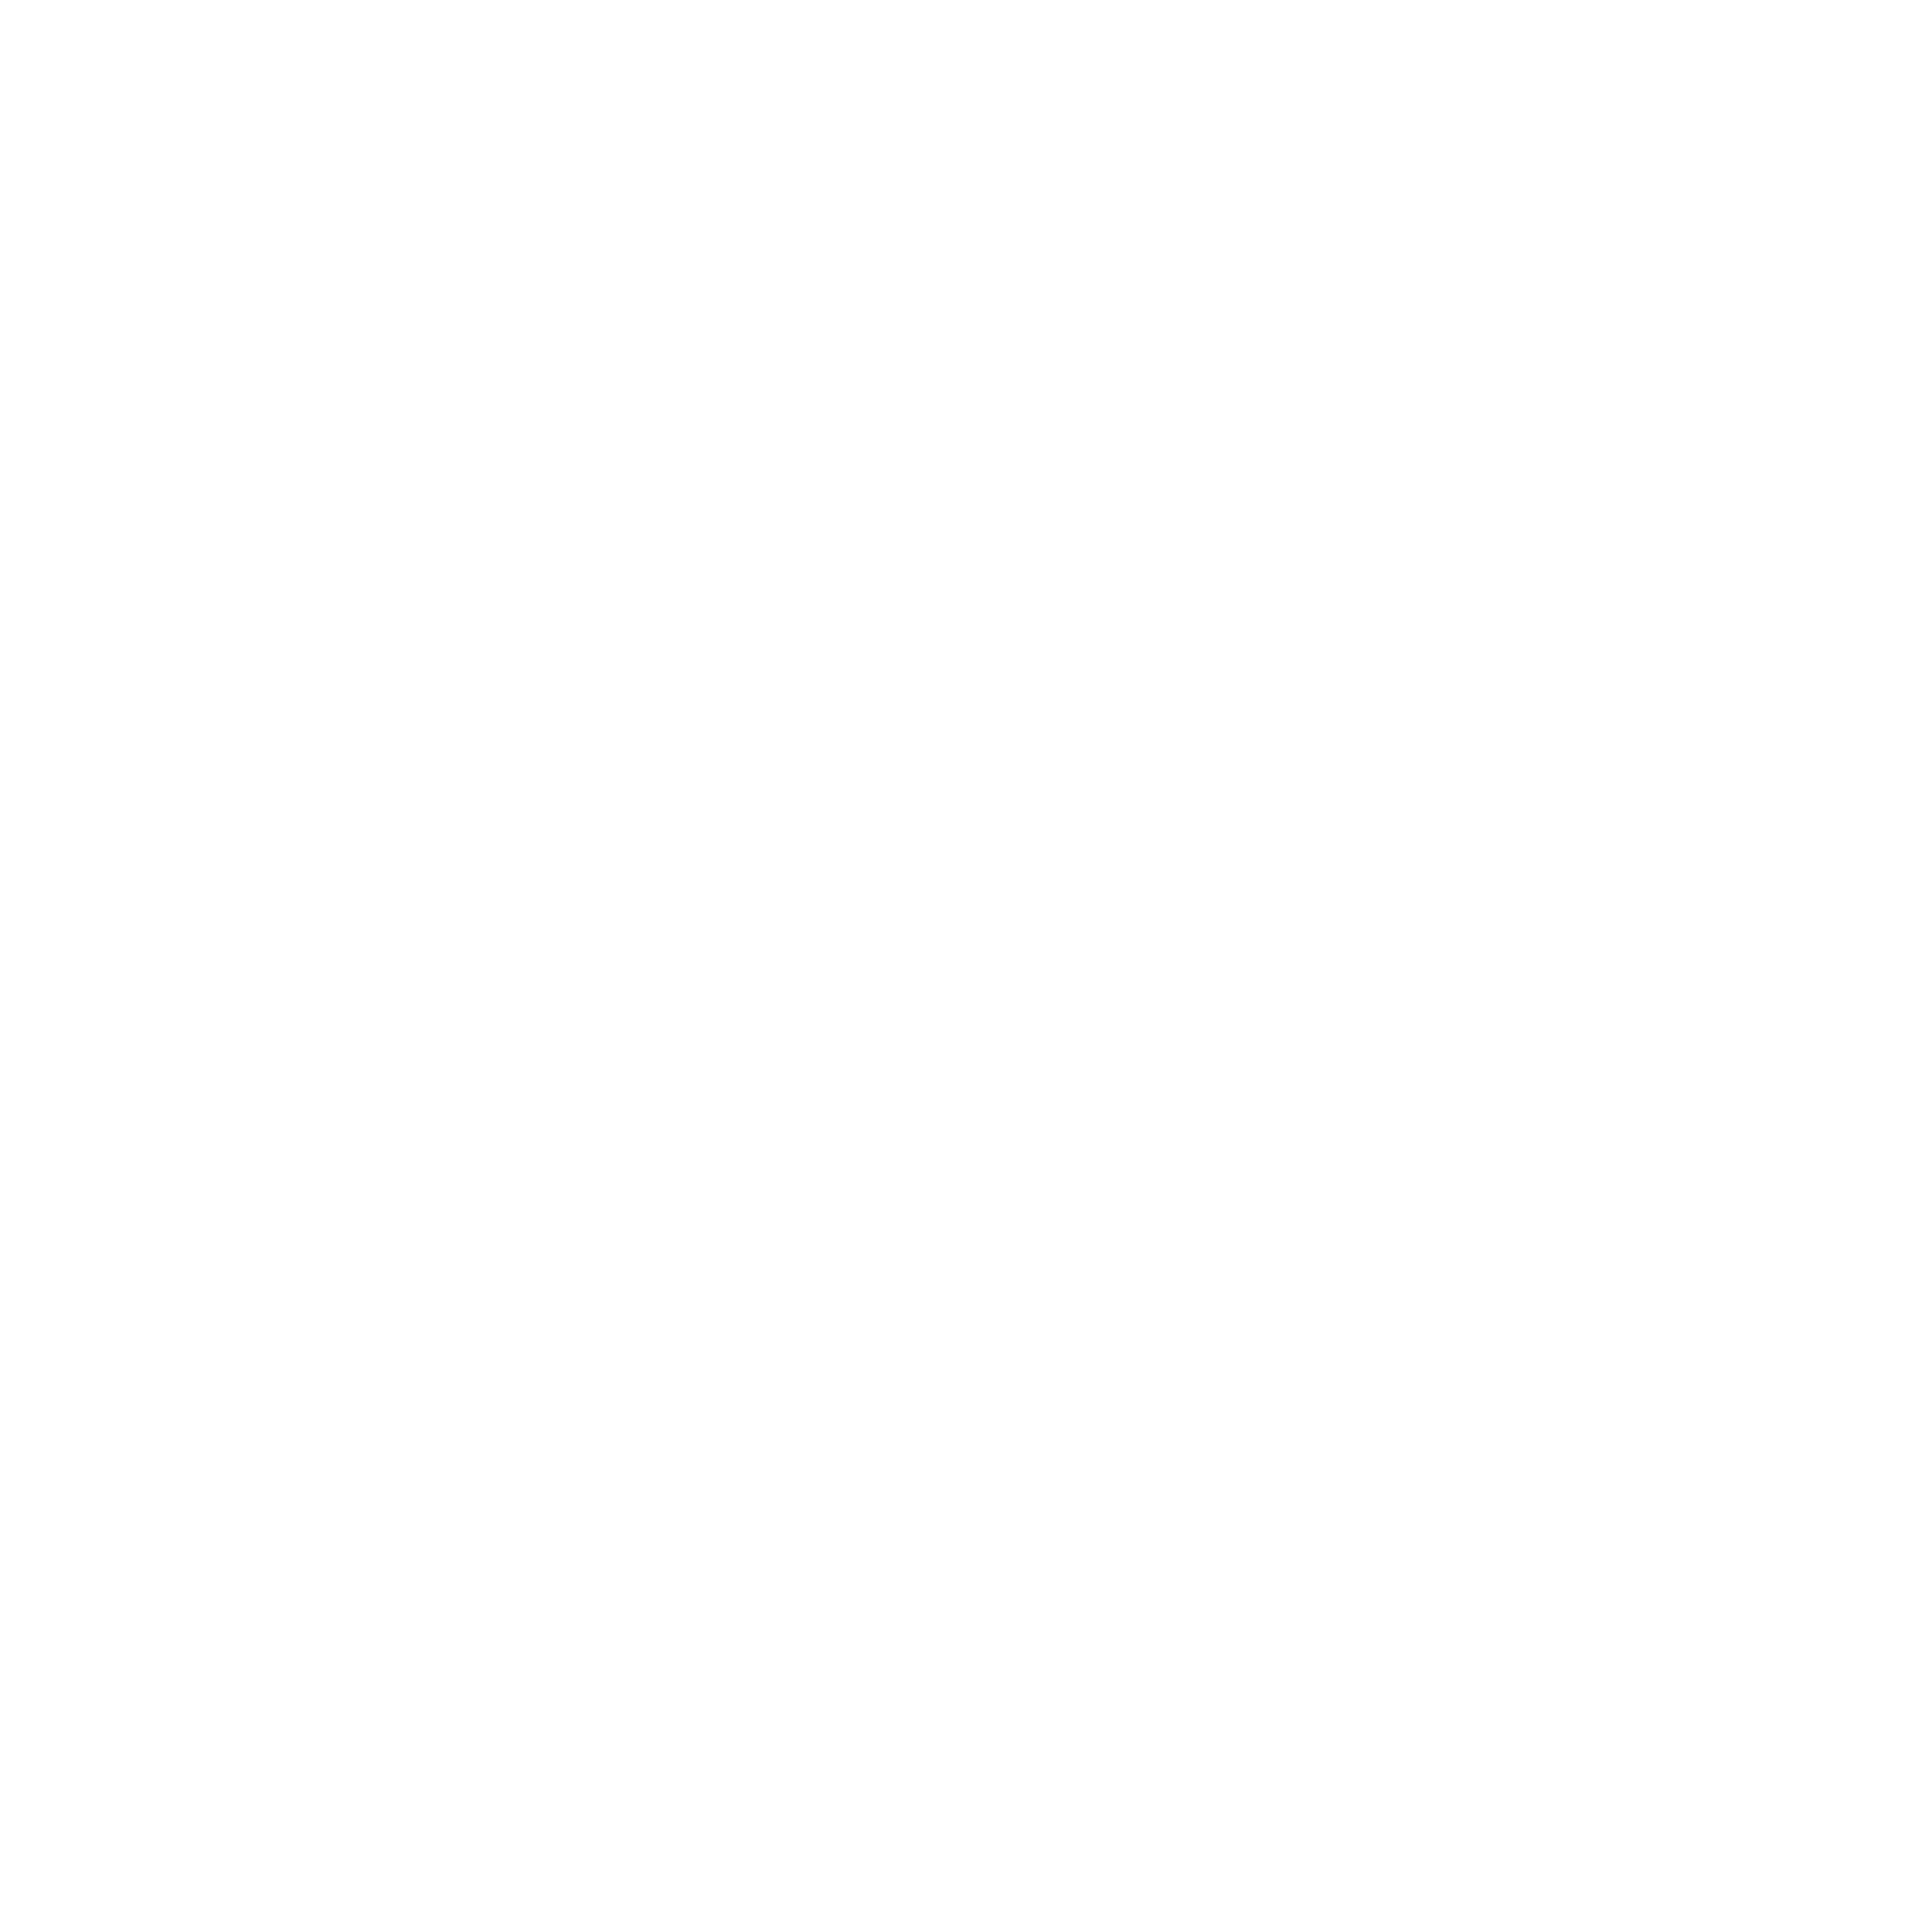 Y-Series-logo